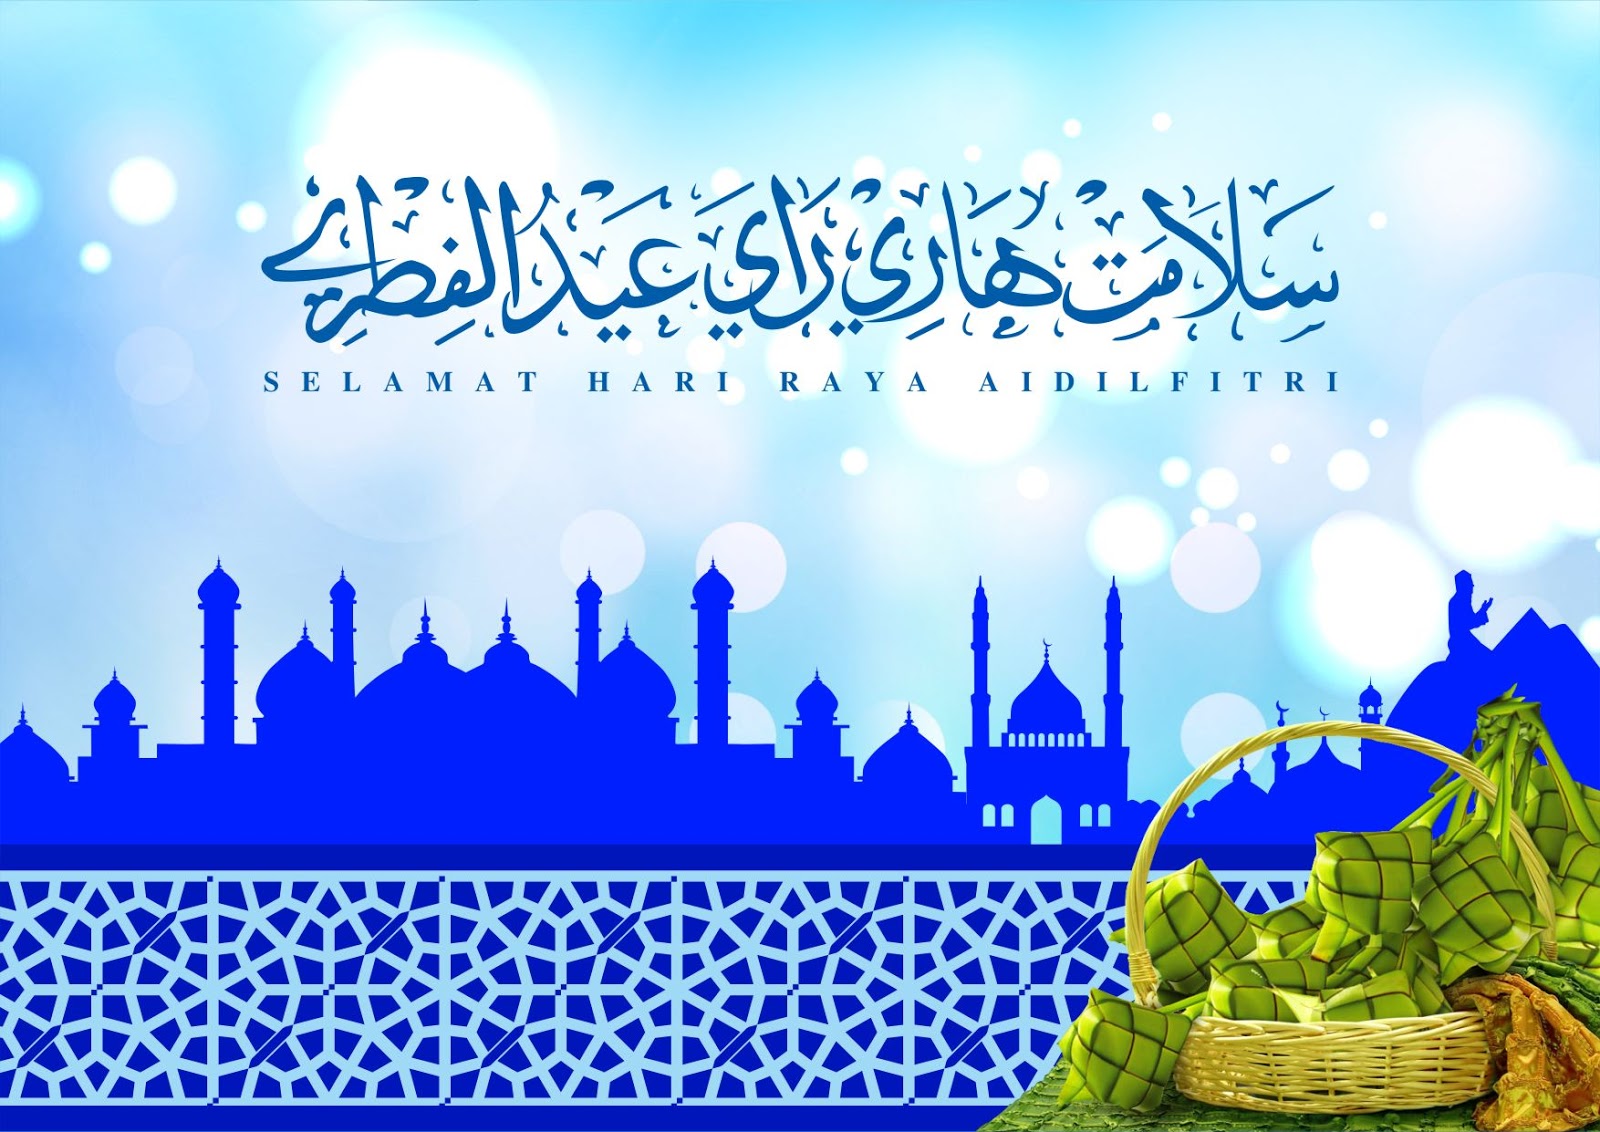 Desain Kartu Selamat Hari raya Idul Fitri  Gawianku